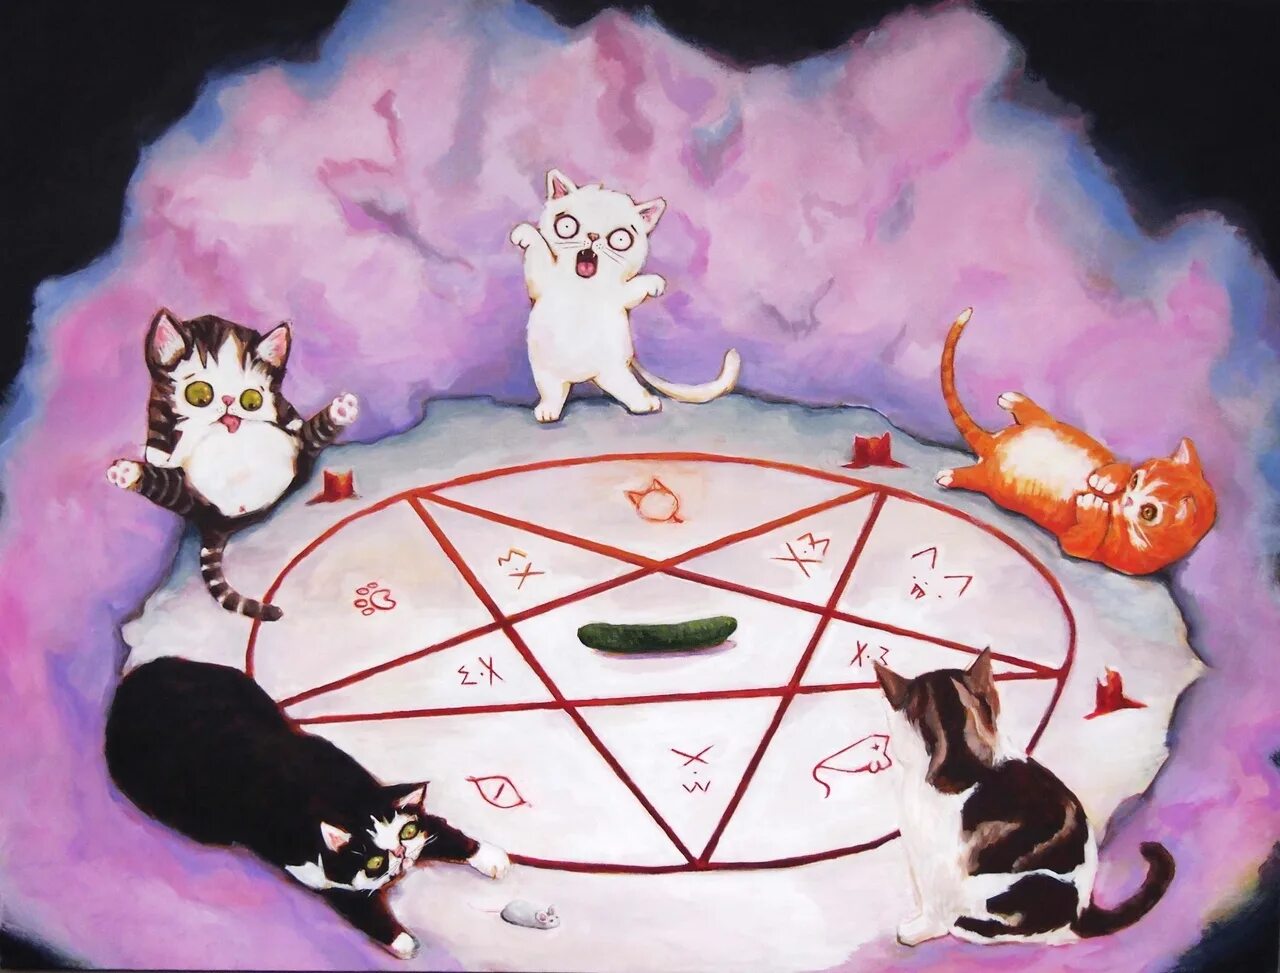 Призвал демона в качестве фамильяра. Кот с пентаграммой. Кот сатана. Коты сатанисты. Коты вызывают сатану.